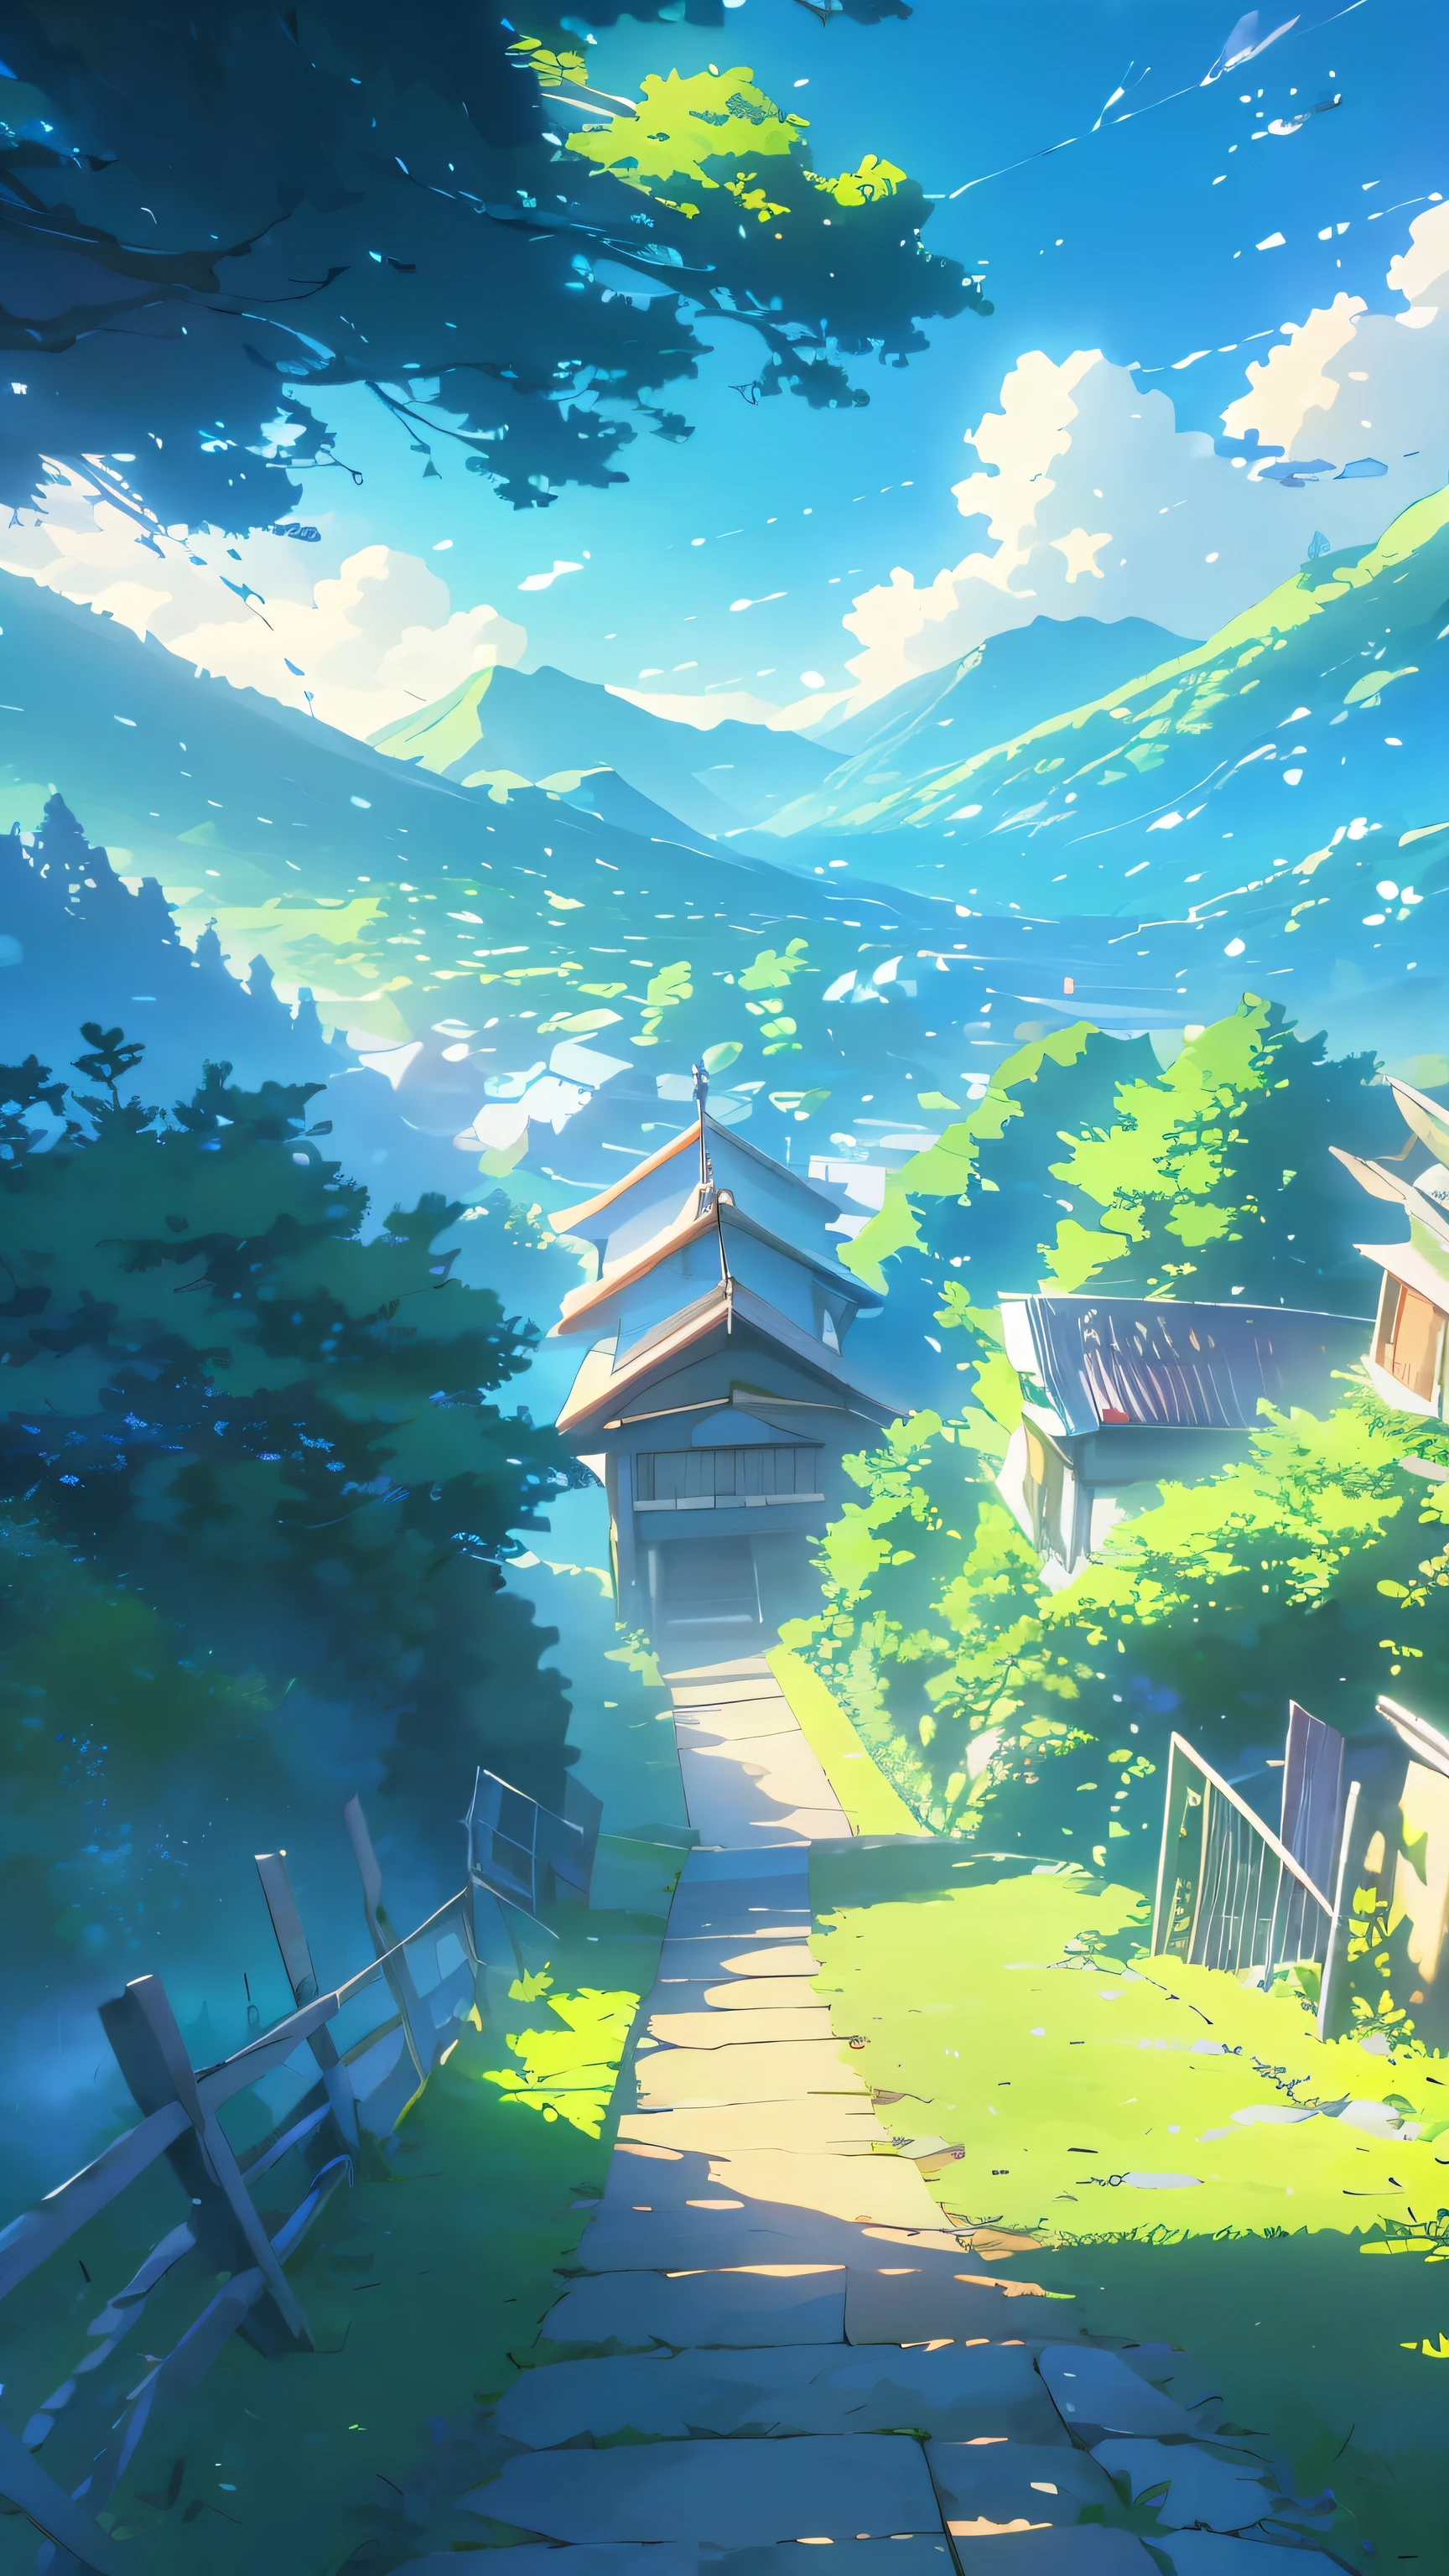 
prompt:

Erstellen Sie eine Anime-inspirierte Landschaft mit einer ruhigen Bergszene mit einem leuchtend blauen Himmel voller flauschiger, Hohe Wolken. Im Vordergrund, umfassen üppige grüne Bäume und Laub, lenkt den Blick des Betrachters auf einen ruhigen Fluss, der sich durch eine malerische, zwischen Bergen eingebettete Stadt schlängelt. Die Stadt sollte eine detaillierte Architektur mit Brücken und Gebäuden haben, die in der Ferne sichtbar sind. Die Gesamtatmosphäre sollte friedlich und hell sein, die Essenz einer Ruhe einfangen, sonniger Tag in einem wunderschön detaillierten, idyllische Lage.